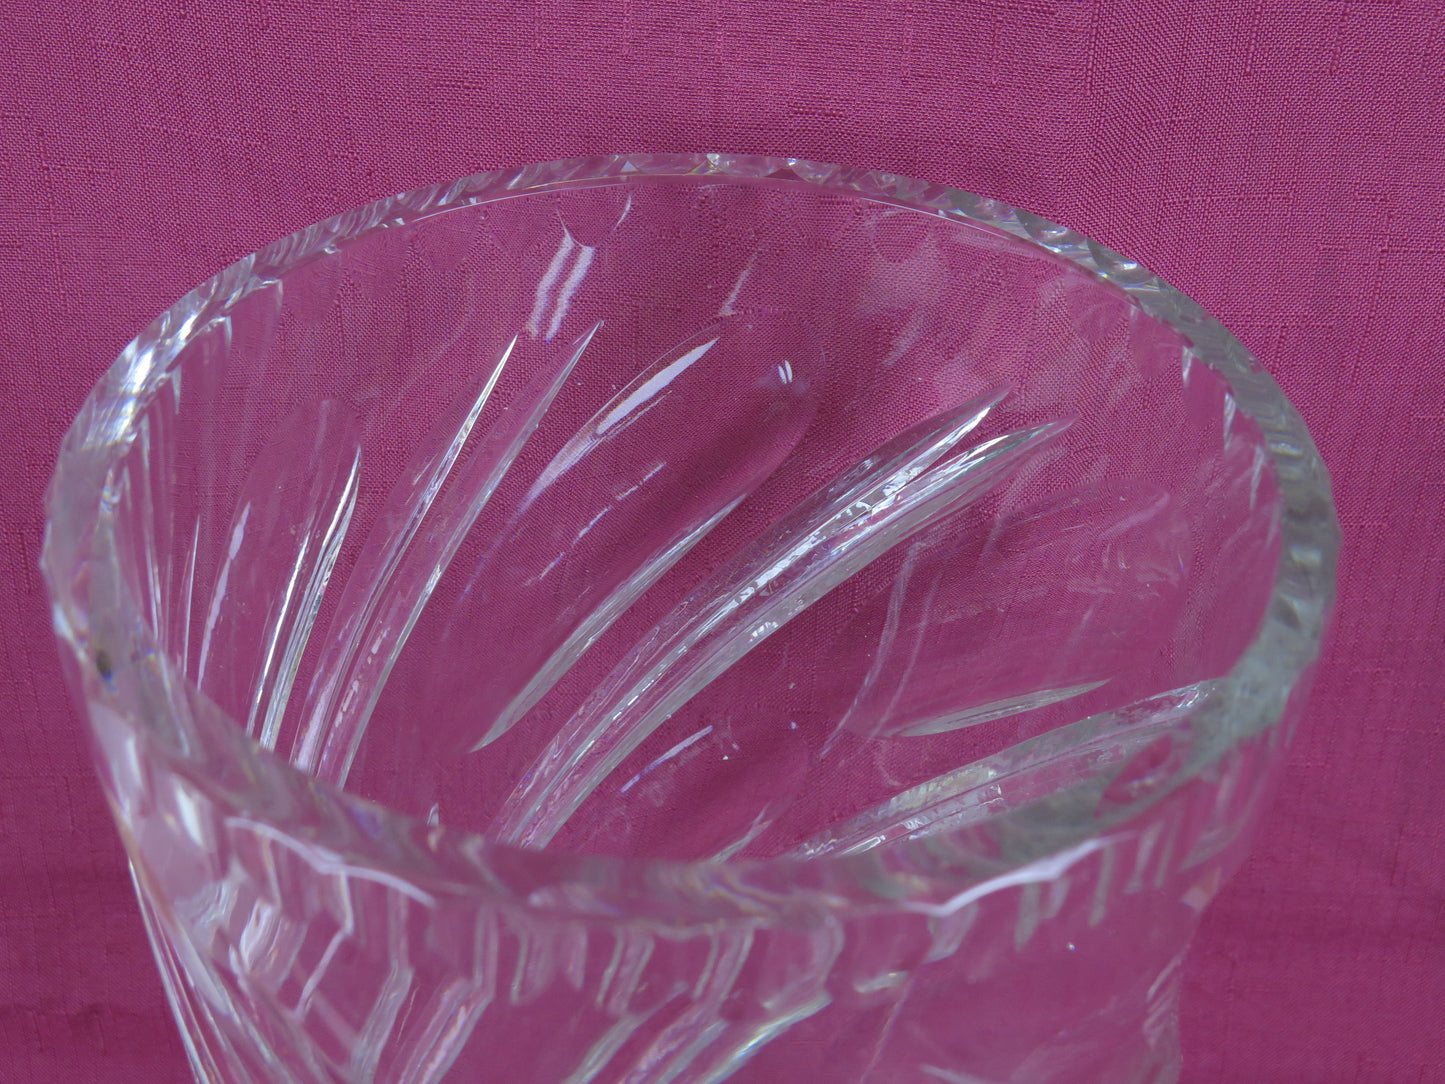 Vaso per fiori vintage di cristallo molato classico elegante vs17